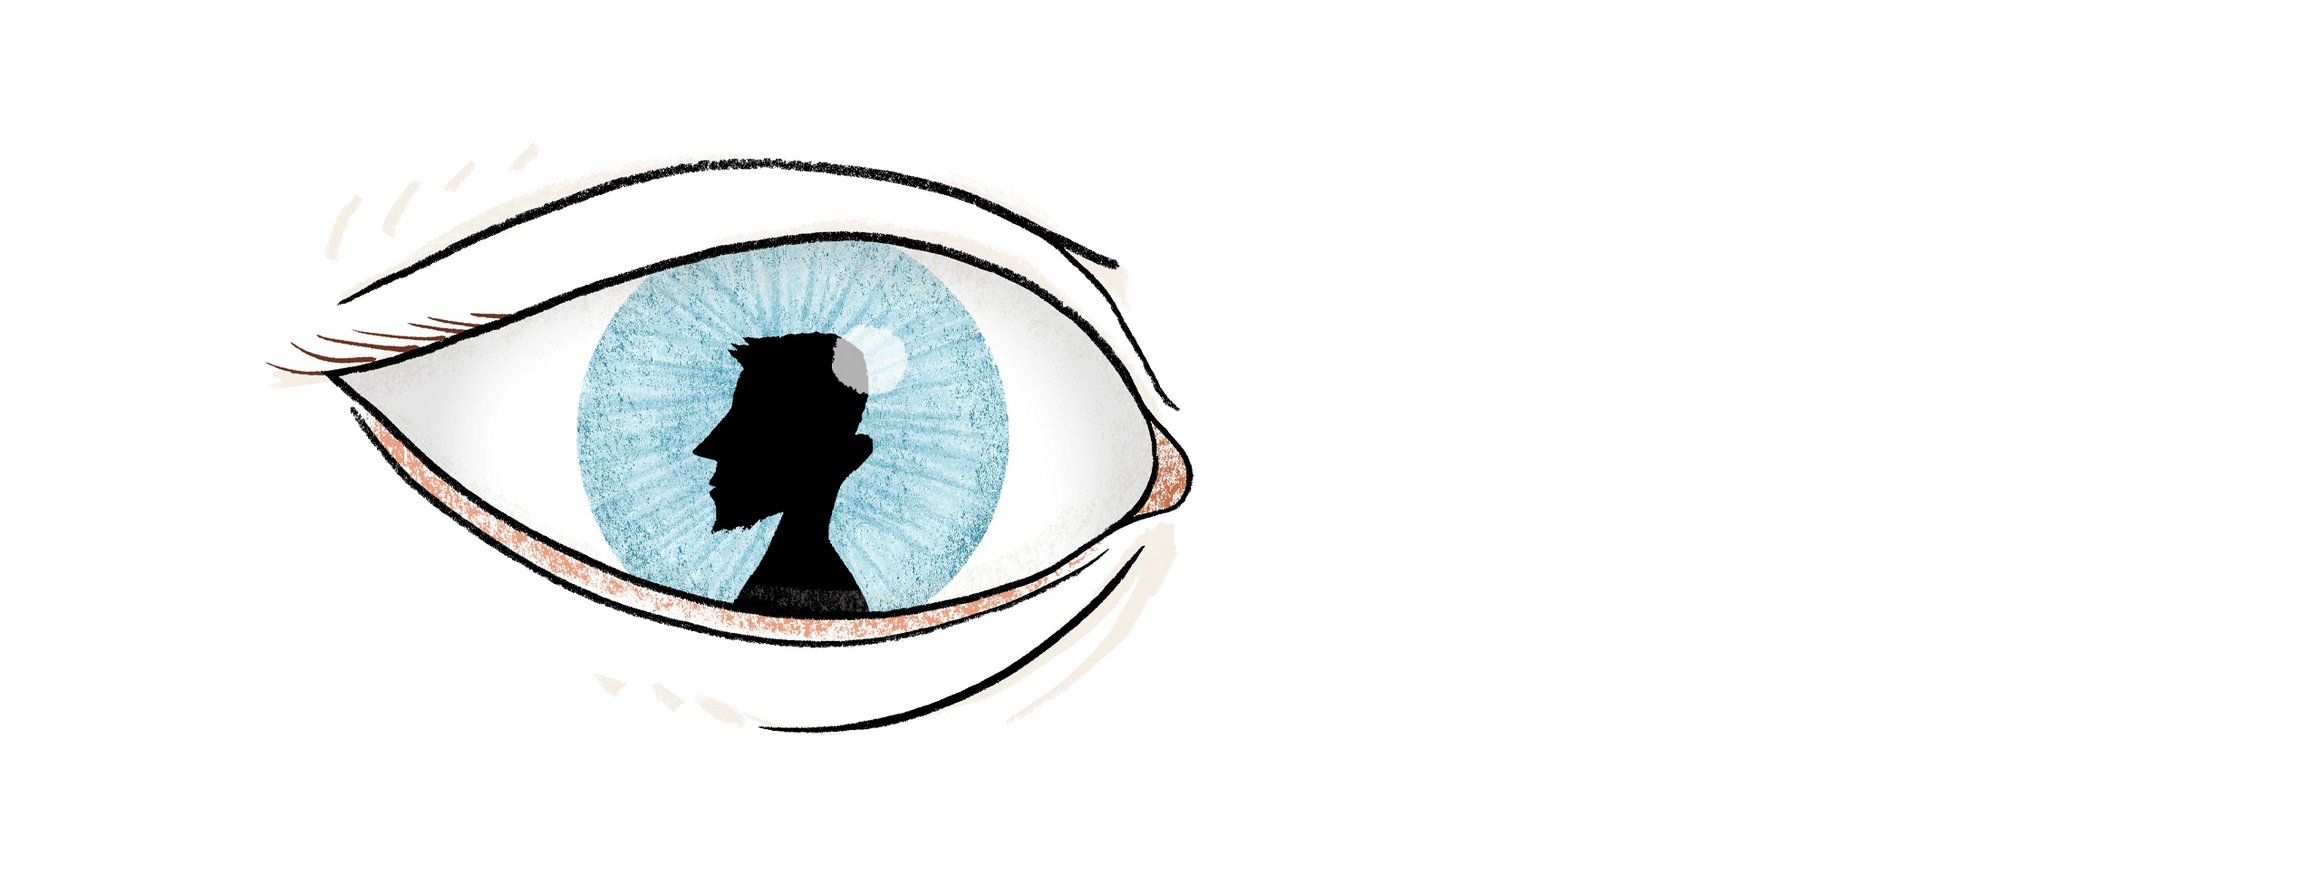 Die Illustration zeigt ein sehr großes, blaues Auge, darin ist eine schwarze, männliche Figur mit einem islamistisch anmutenden Bart zu sehen